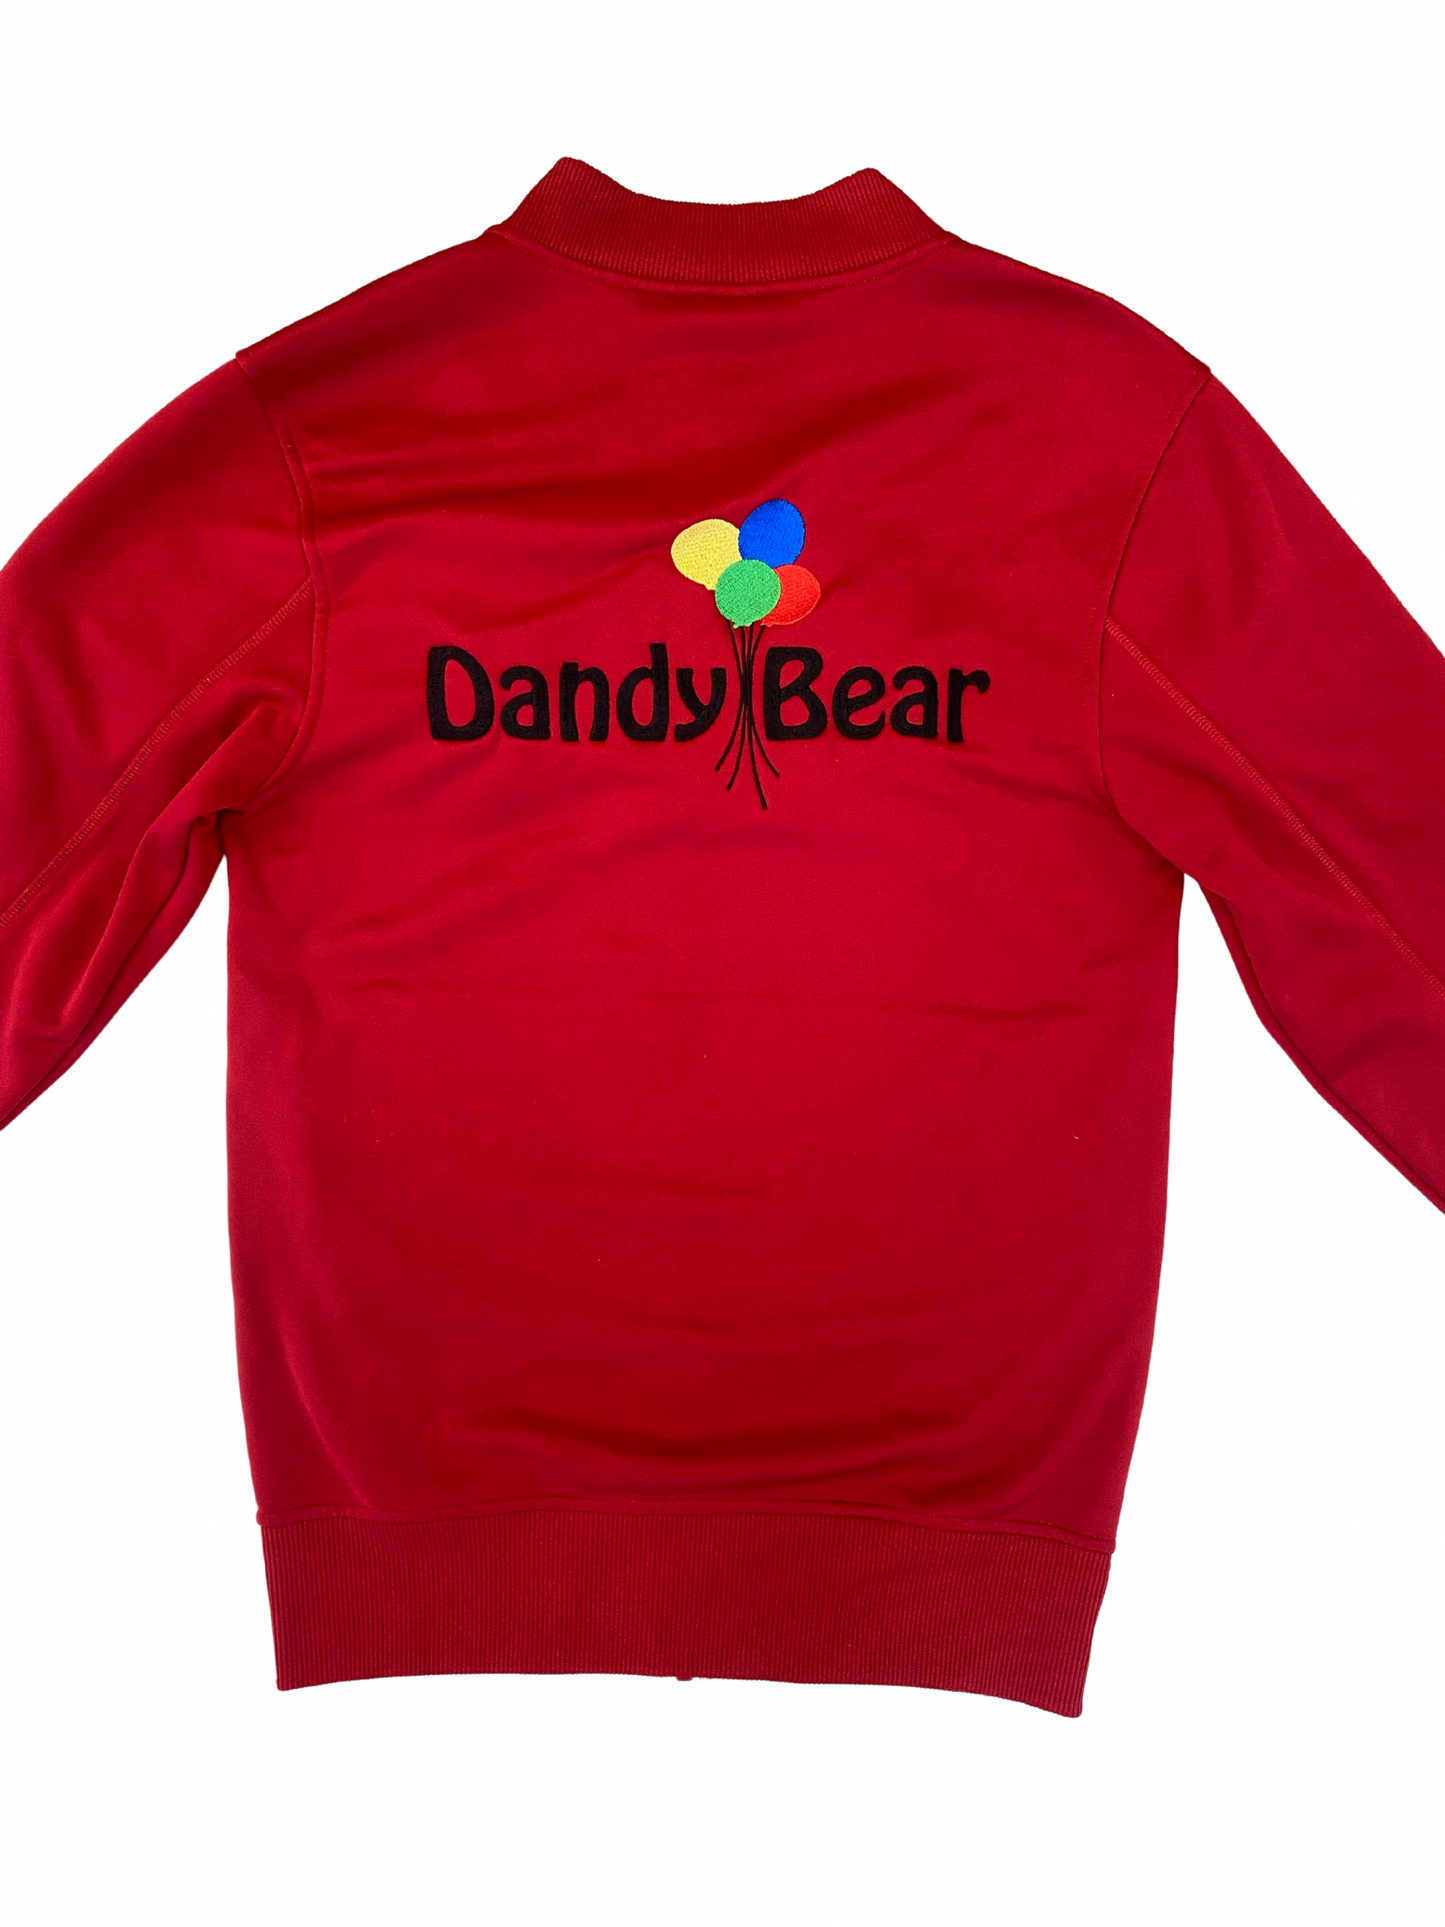 Dandy Bear Jacket